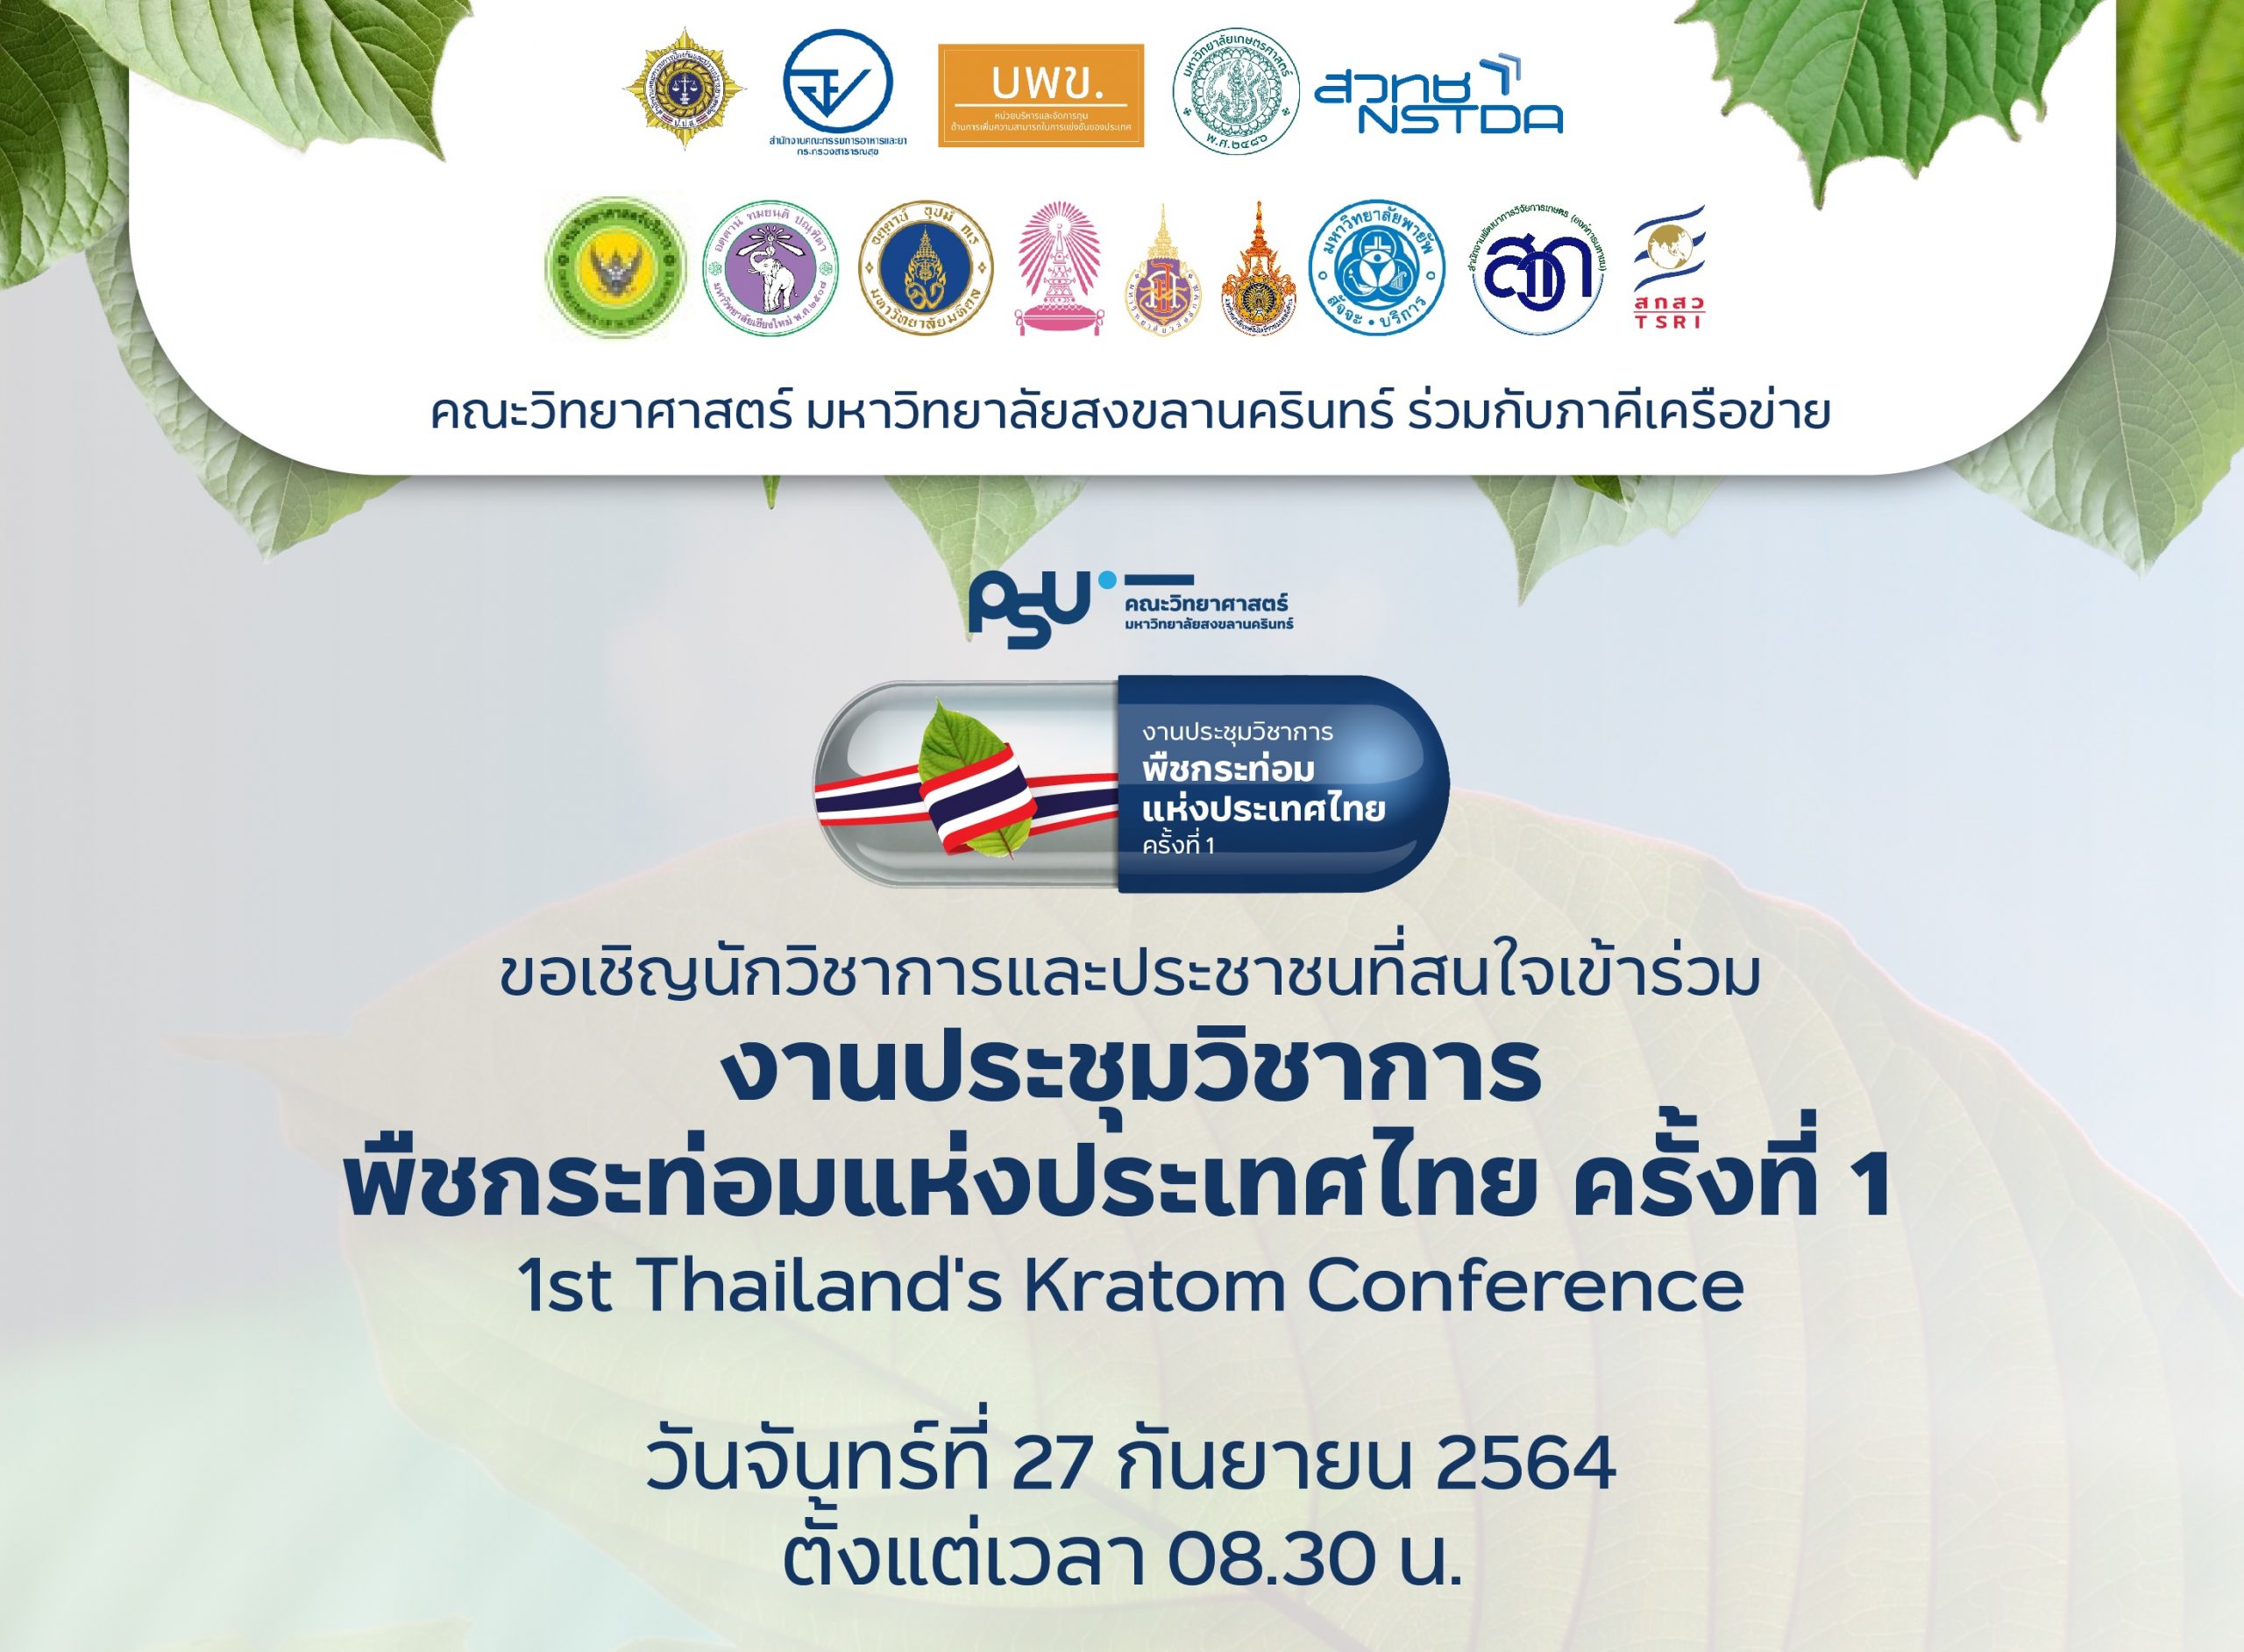 งานประชุมวิชาการพืชกระท่อมแห่งประเทศไทย ครั้งที่ 1